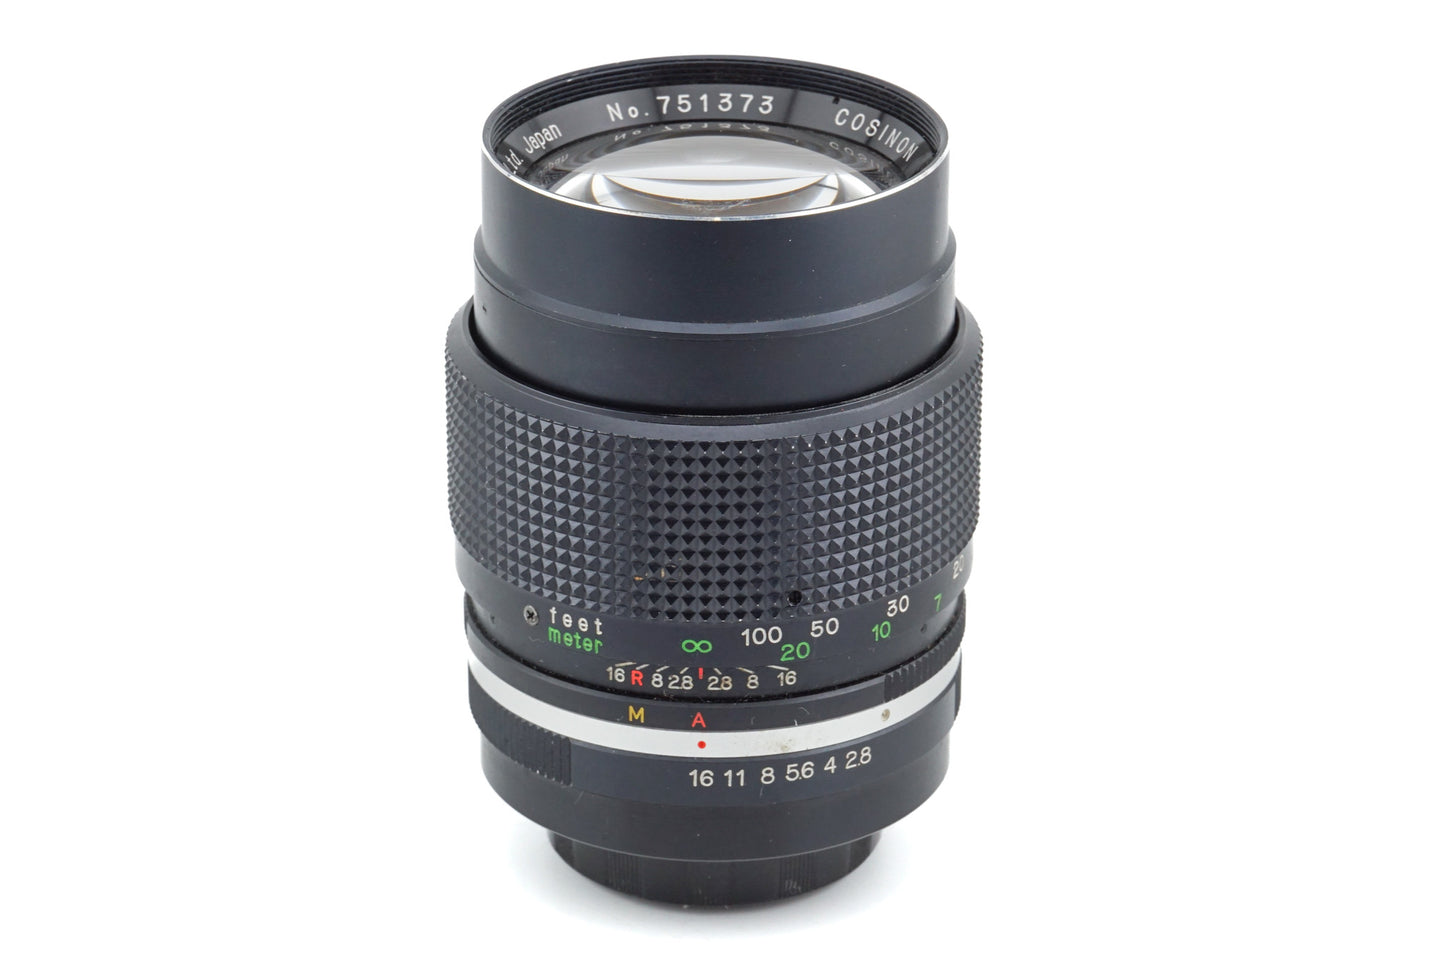 Cosina 135mm f2.8 Auto Cosinon - Lens